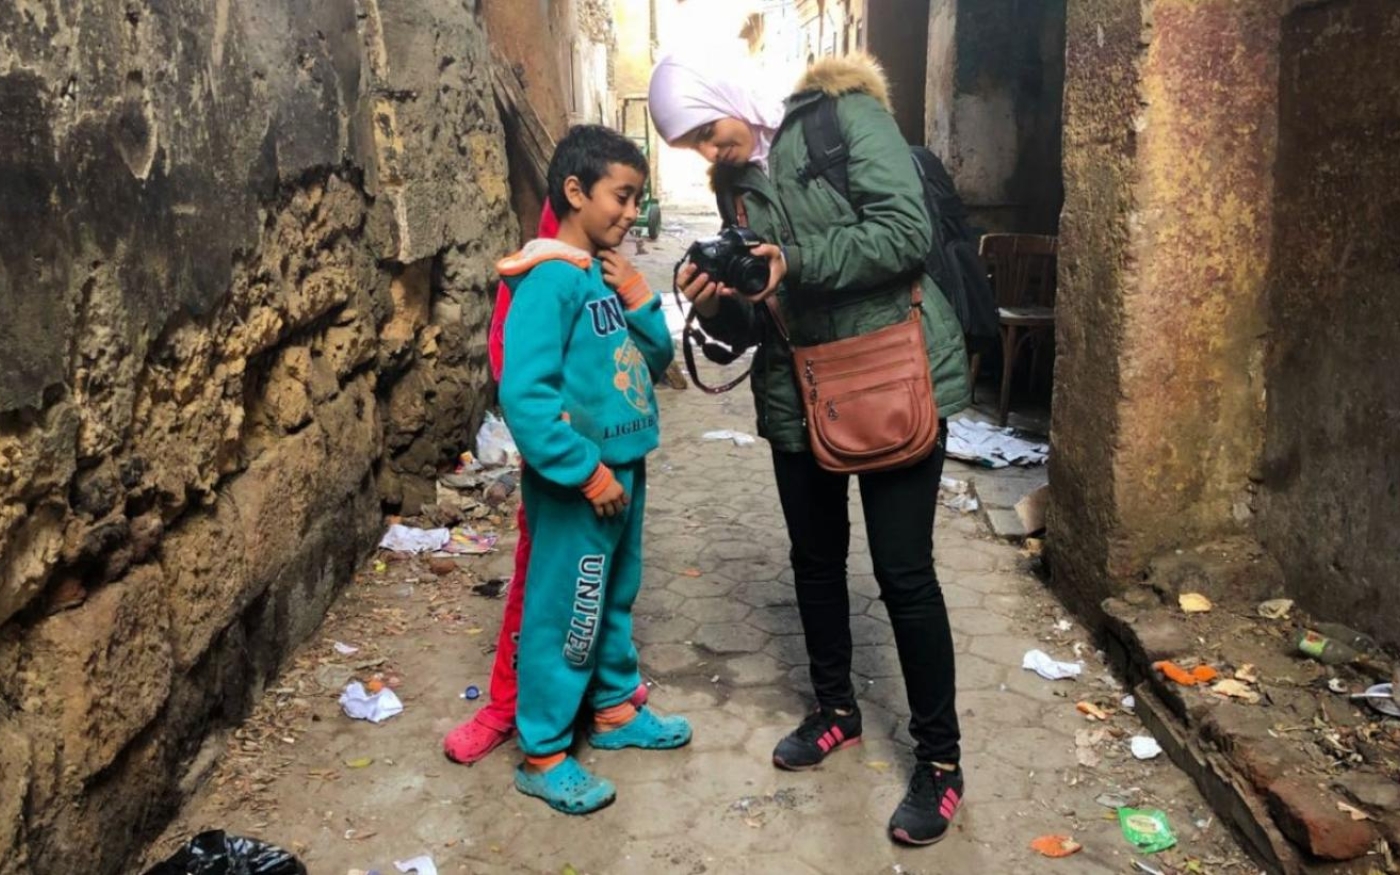 La photojournaliste Somaya Abdelrahman montre son appareil photo à un écolier dans les ruelles du Caire, en février 2018 (Somaya Abdelrahman)